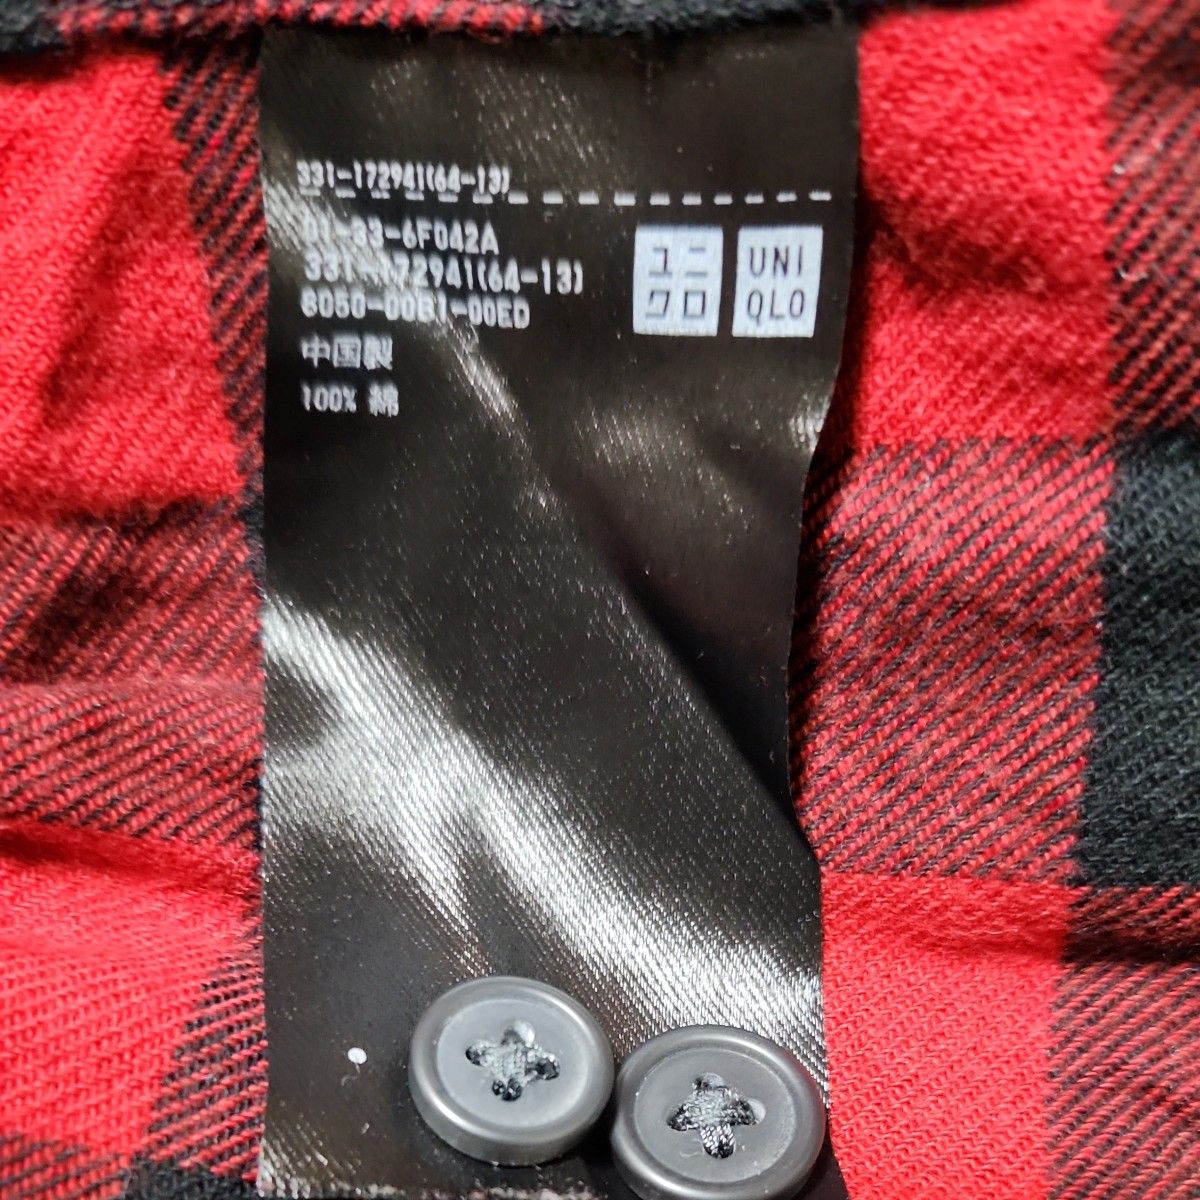 ユニクロ UNIQLO ブロックチェック 長袖シャツ サイズM 赤×黒 中古品 331-172941  ネルシャツ